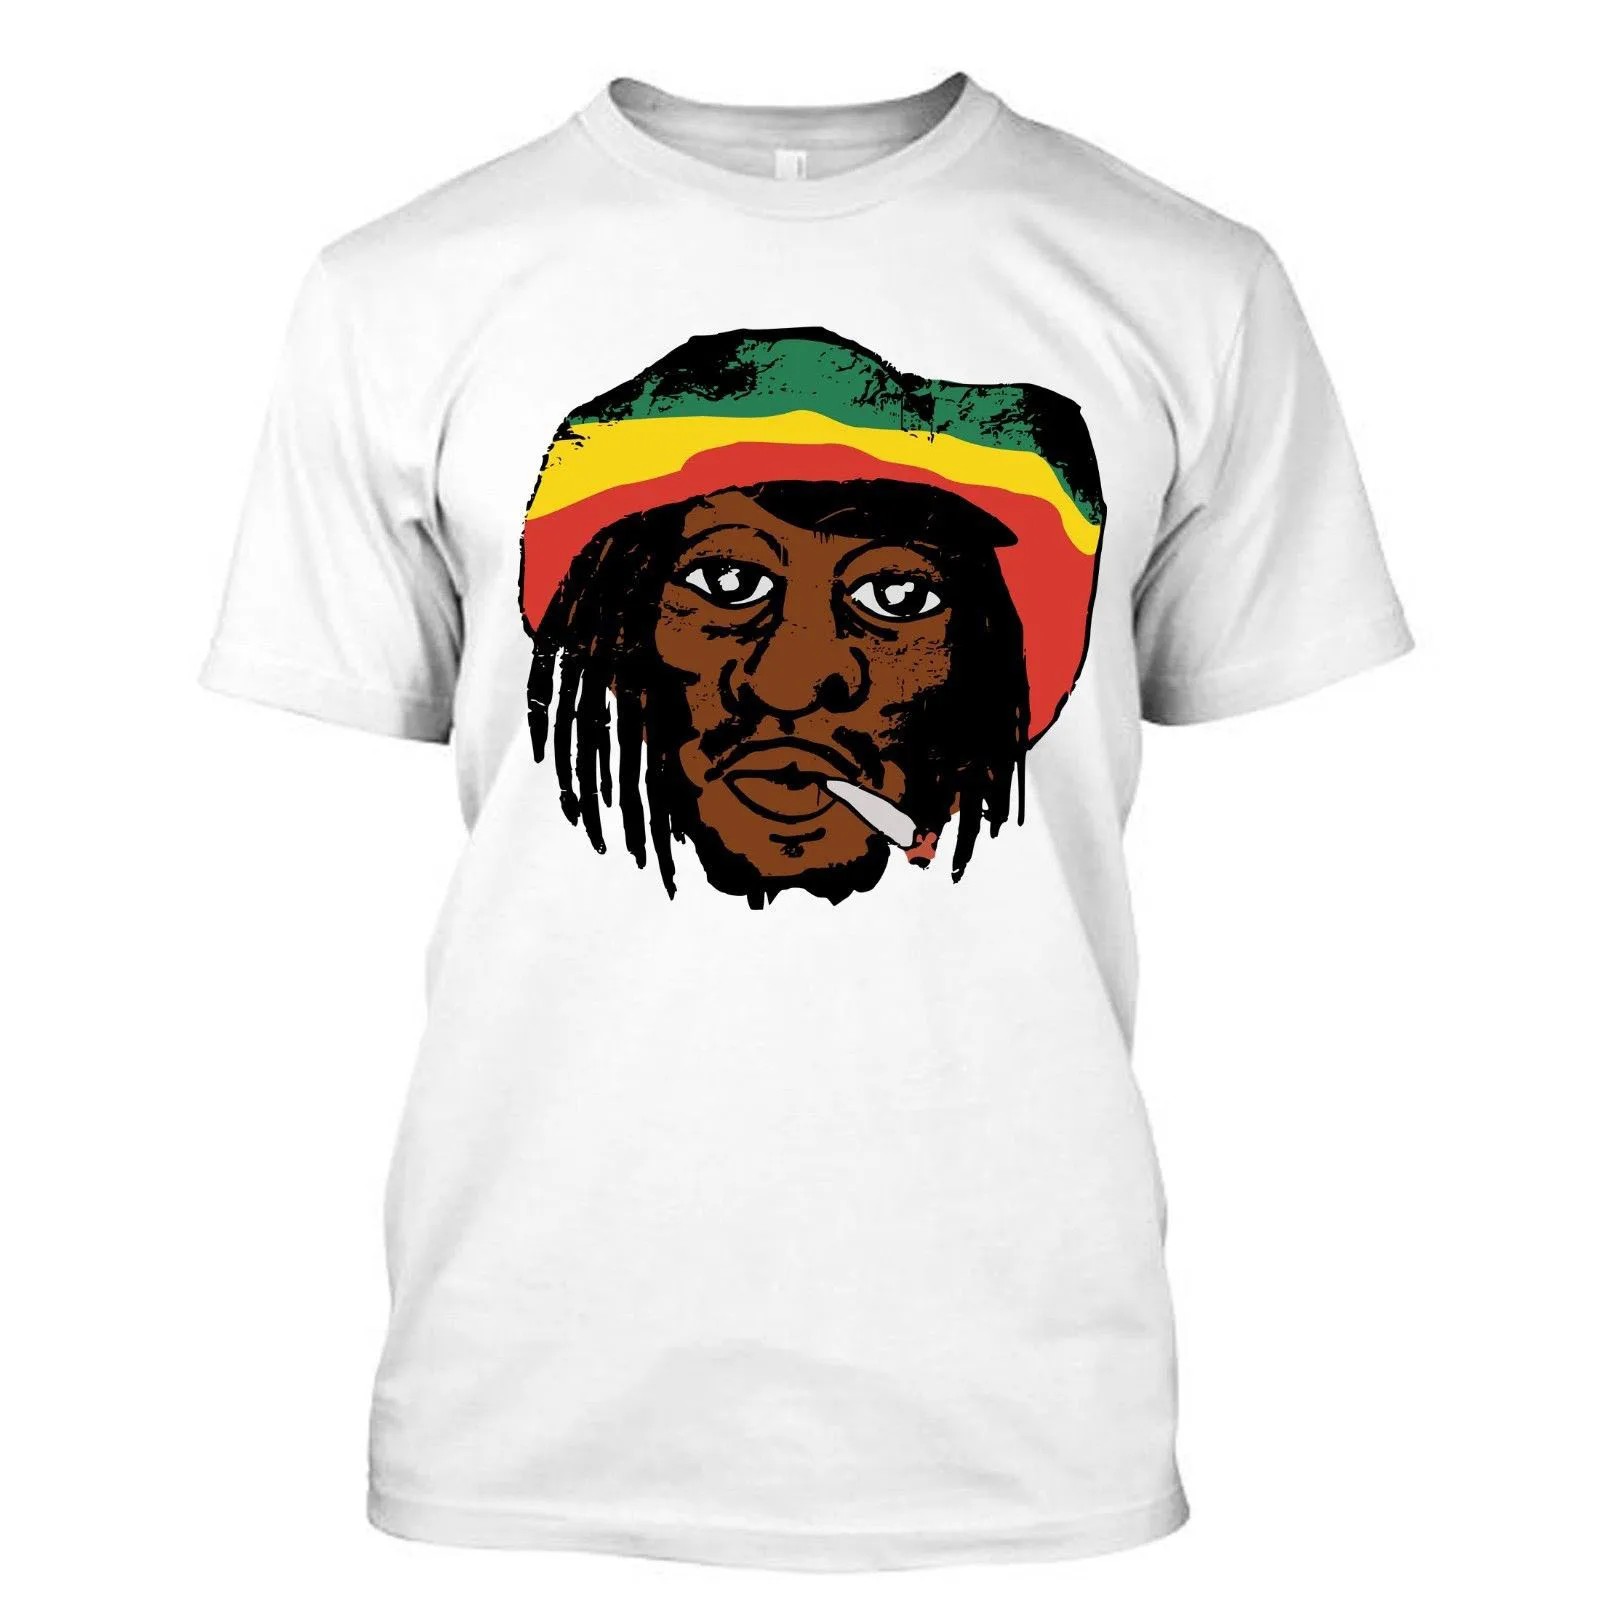 Ямайка я люблю музыкальной культуры футболки discout популярные новые модная футболка Топ Бесплатная доставка 2018 officia